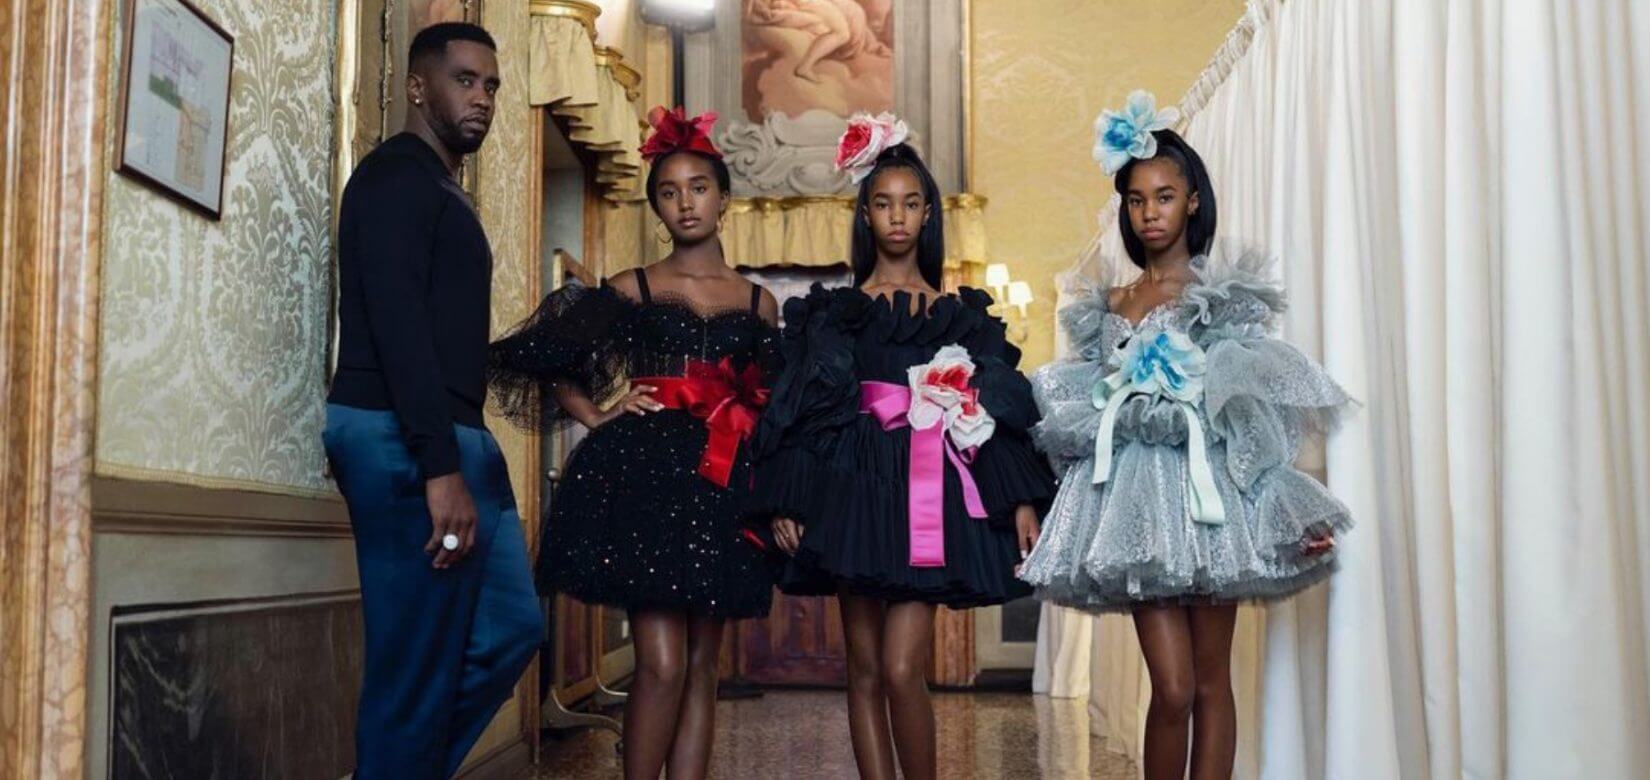 Οι κόρες του Diddy τίμησαν την μητέρα τους περπατώντας στην πασαρέλα των Dolce & Gabbana (vid)